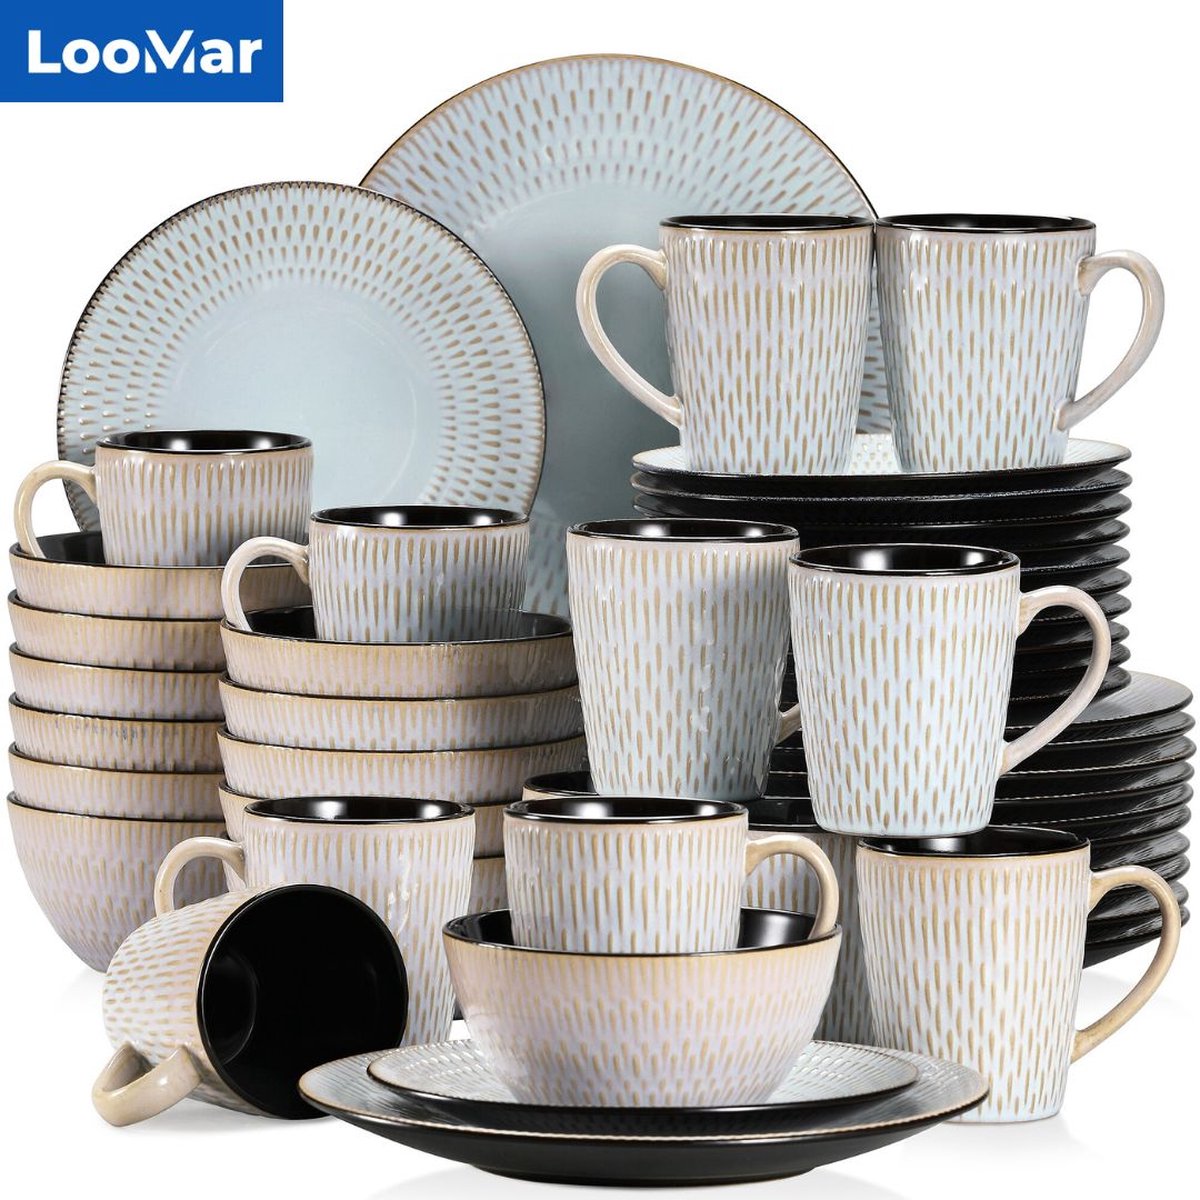 Ensemble de vaisselle de Luxe LooMar - 16 pièces - 4 personnes